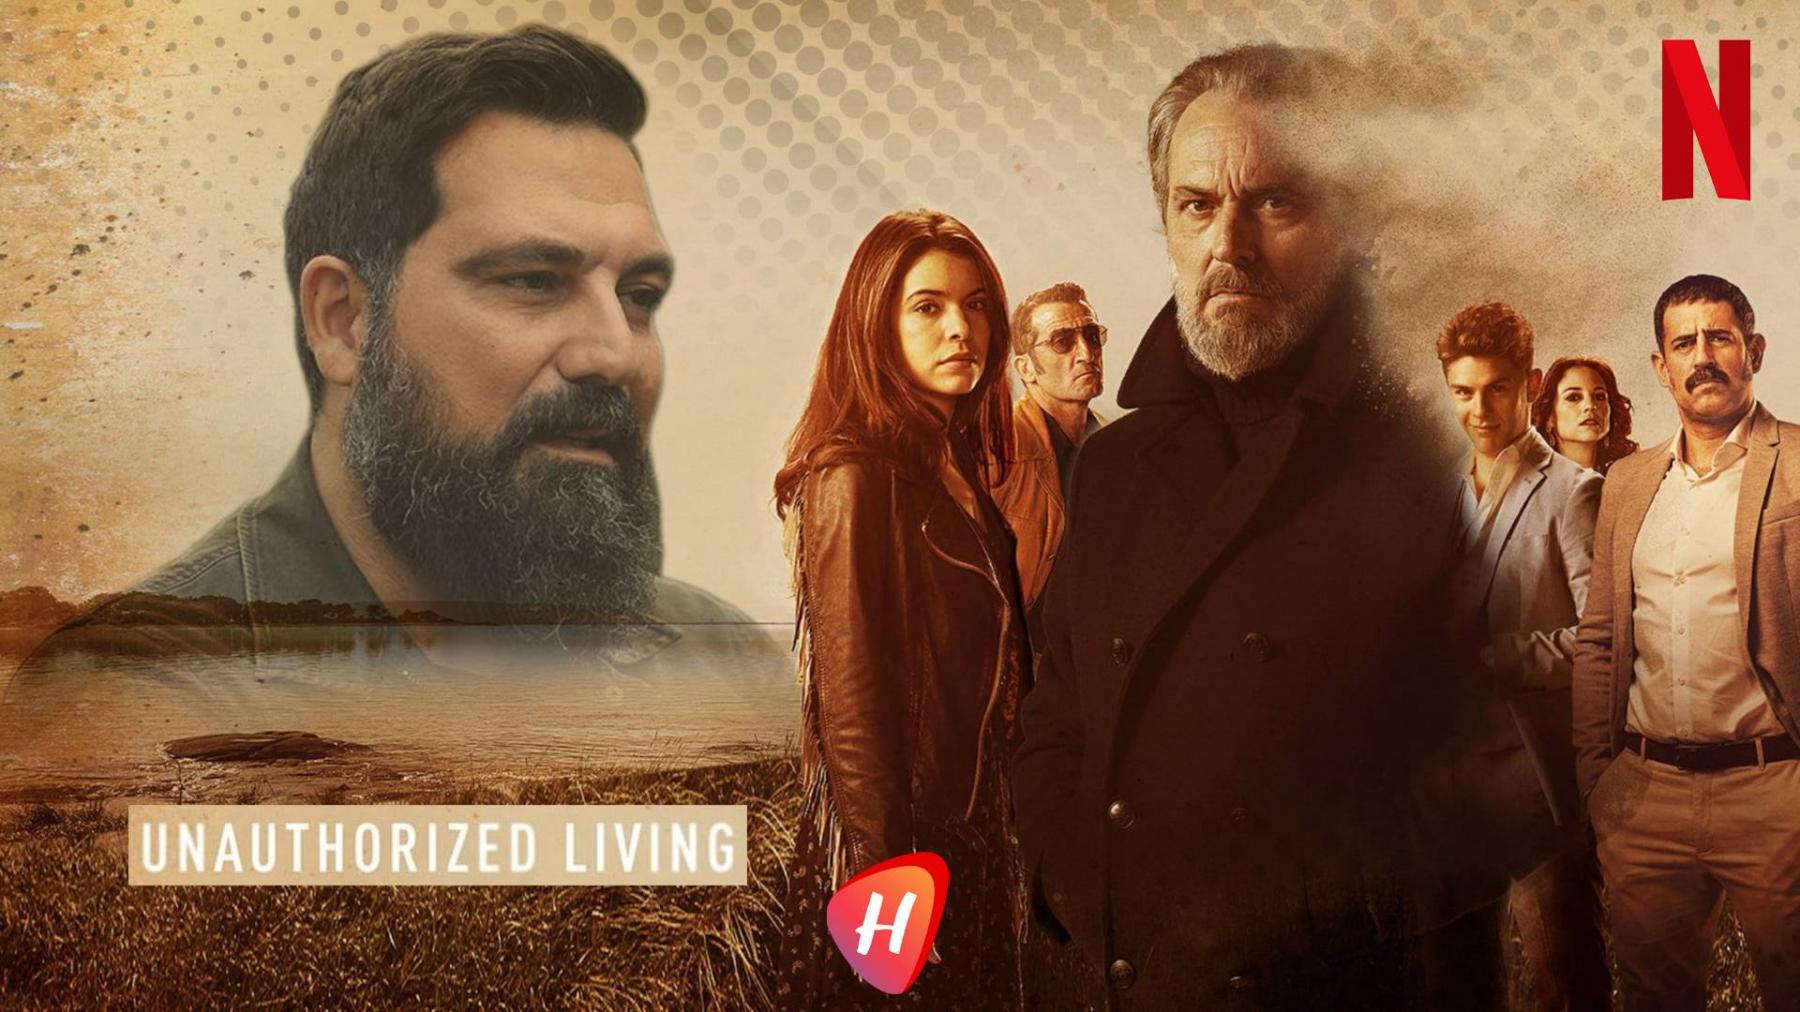 بولنت إينال بطل النسخة التركية من المسلسل الإسباني Unauthorized Living